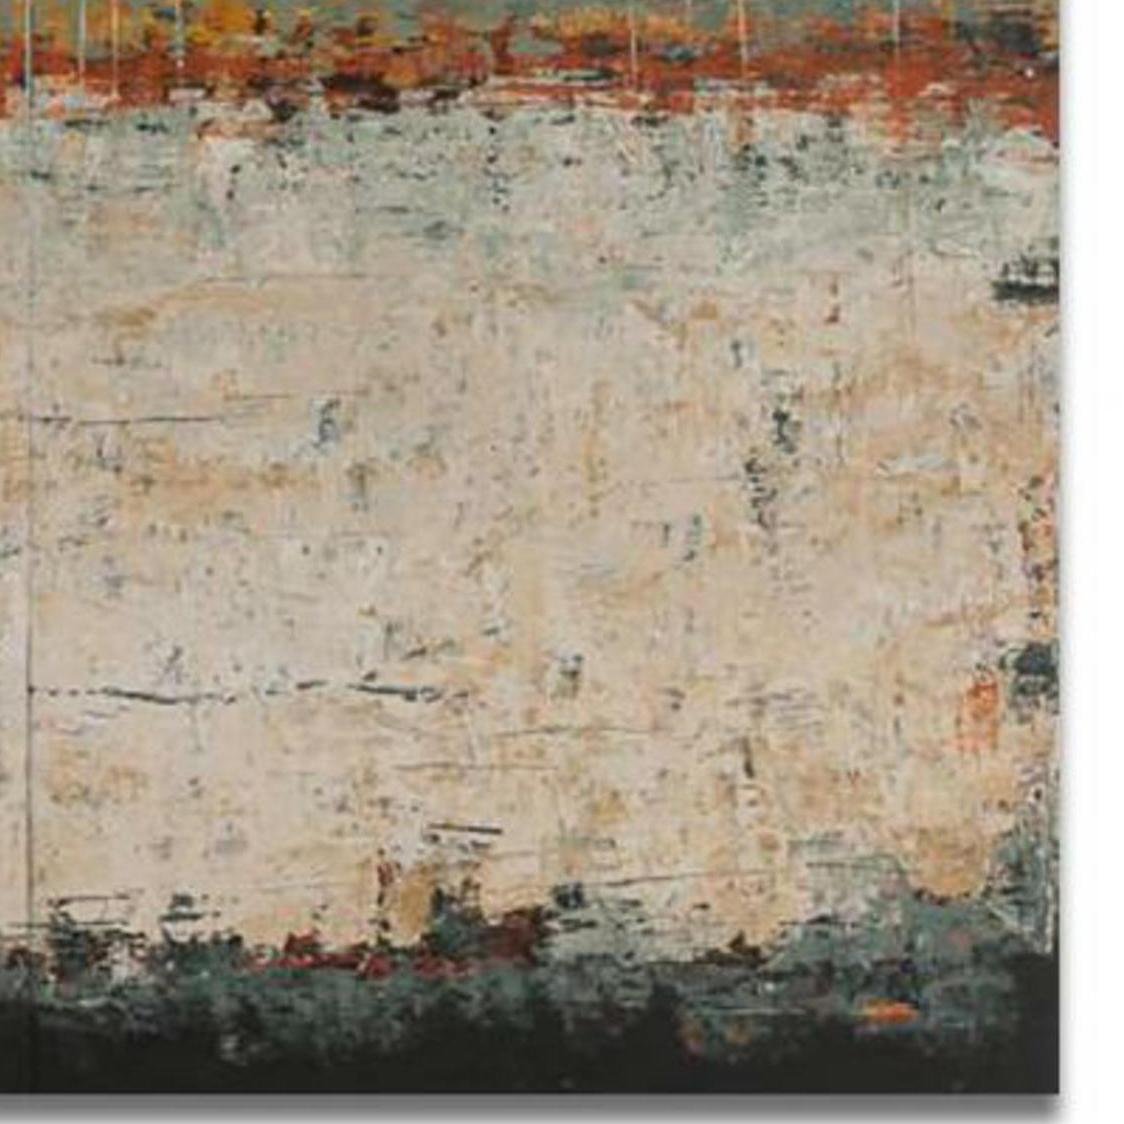 Monterey der Künstlerin Patricia Oblack und ein braunes, graues, türkisfarbenes und schwarzes zeitgenössisches abstraktes Mixed-Media-Panel mit den Maßen 48 x 64 zum Preis von 7.400 $.

